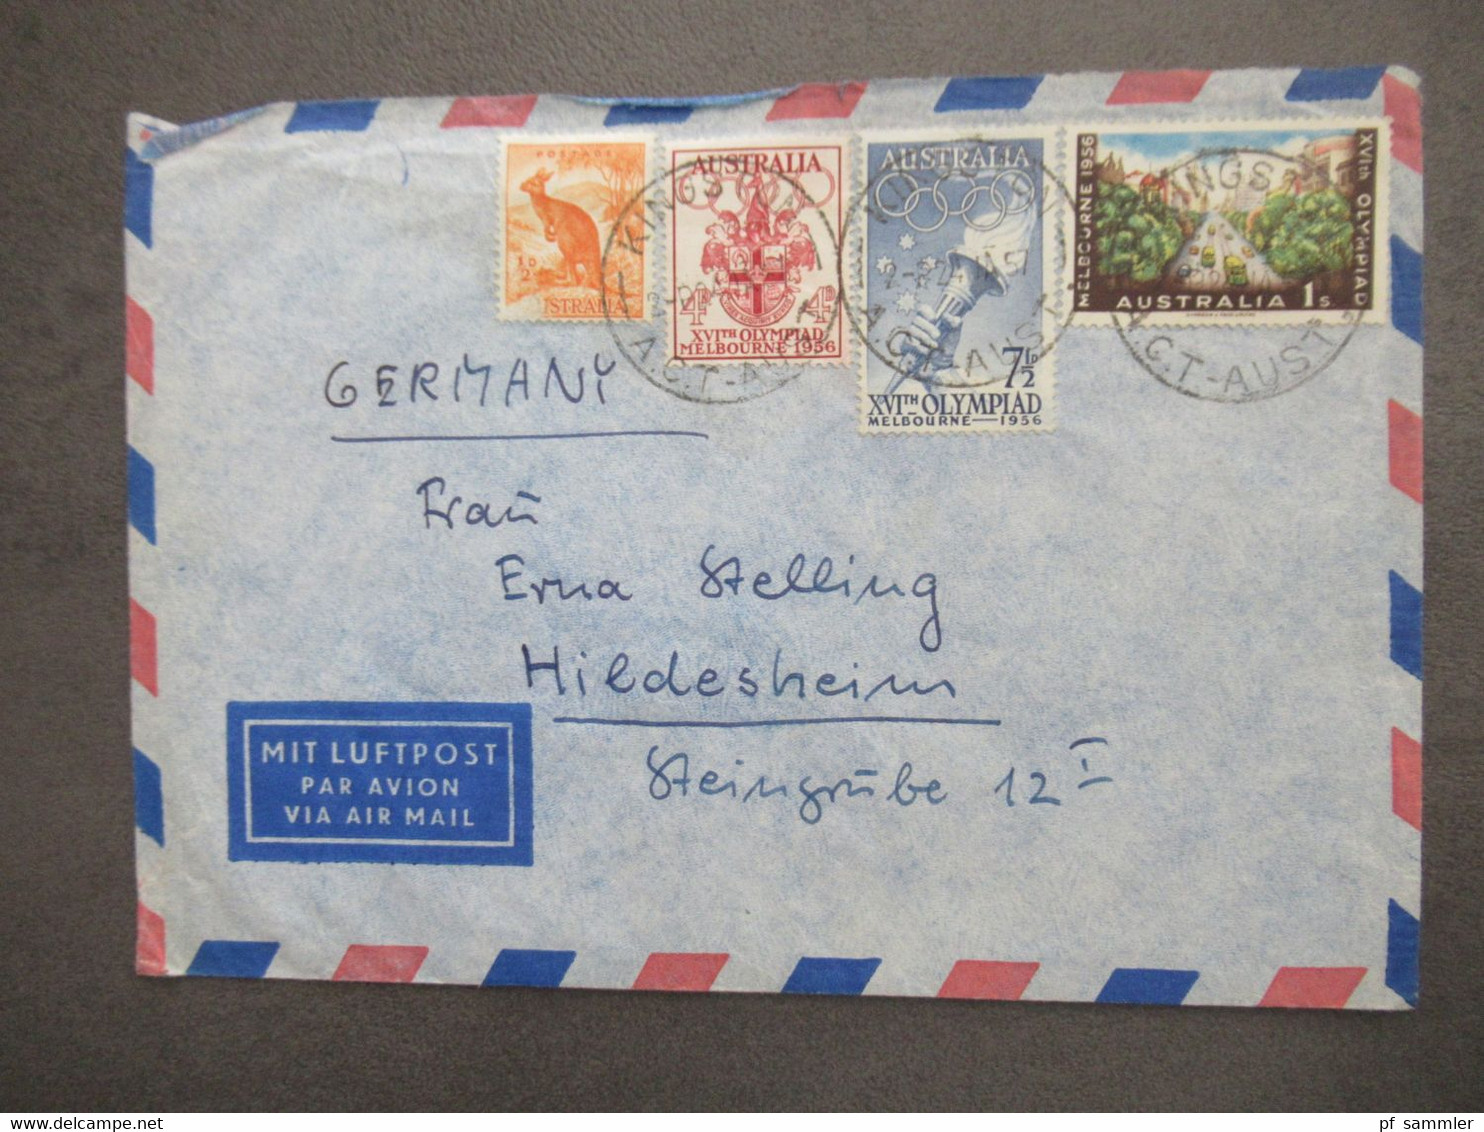 Australien Marken Von 1956 Mit Luftpost Air Mail Kingston - Hildesheim Aulandsbrief - Lettres & Documents